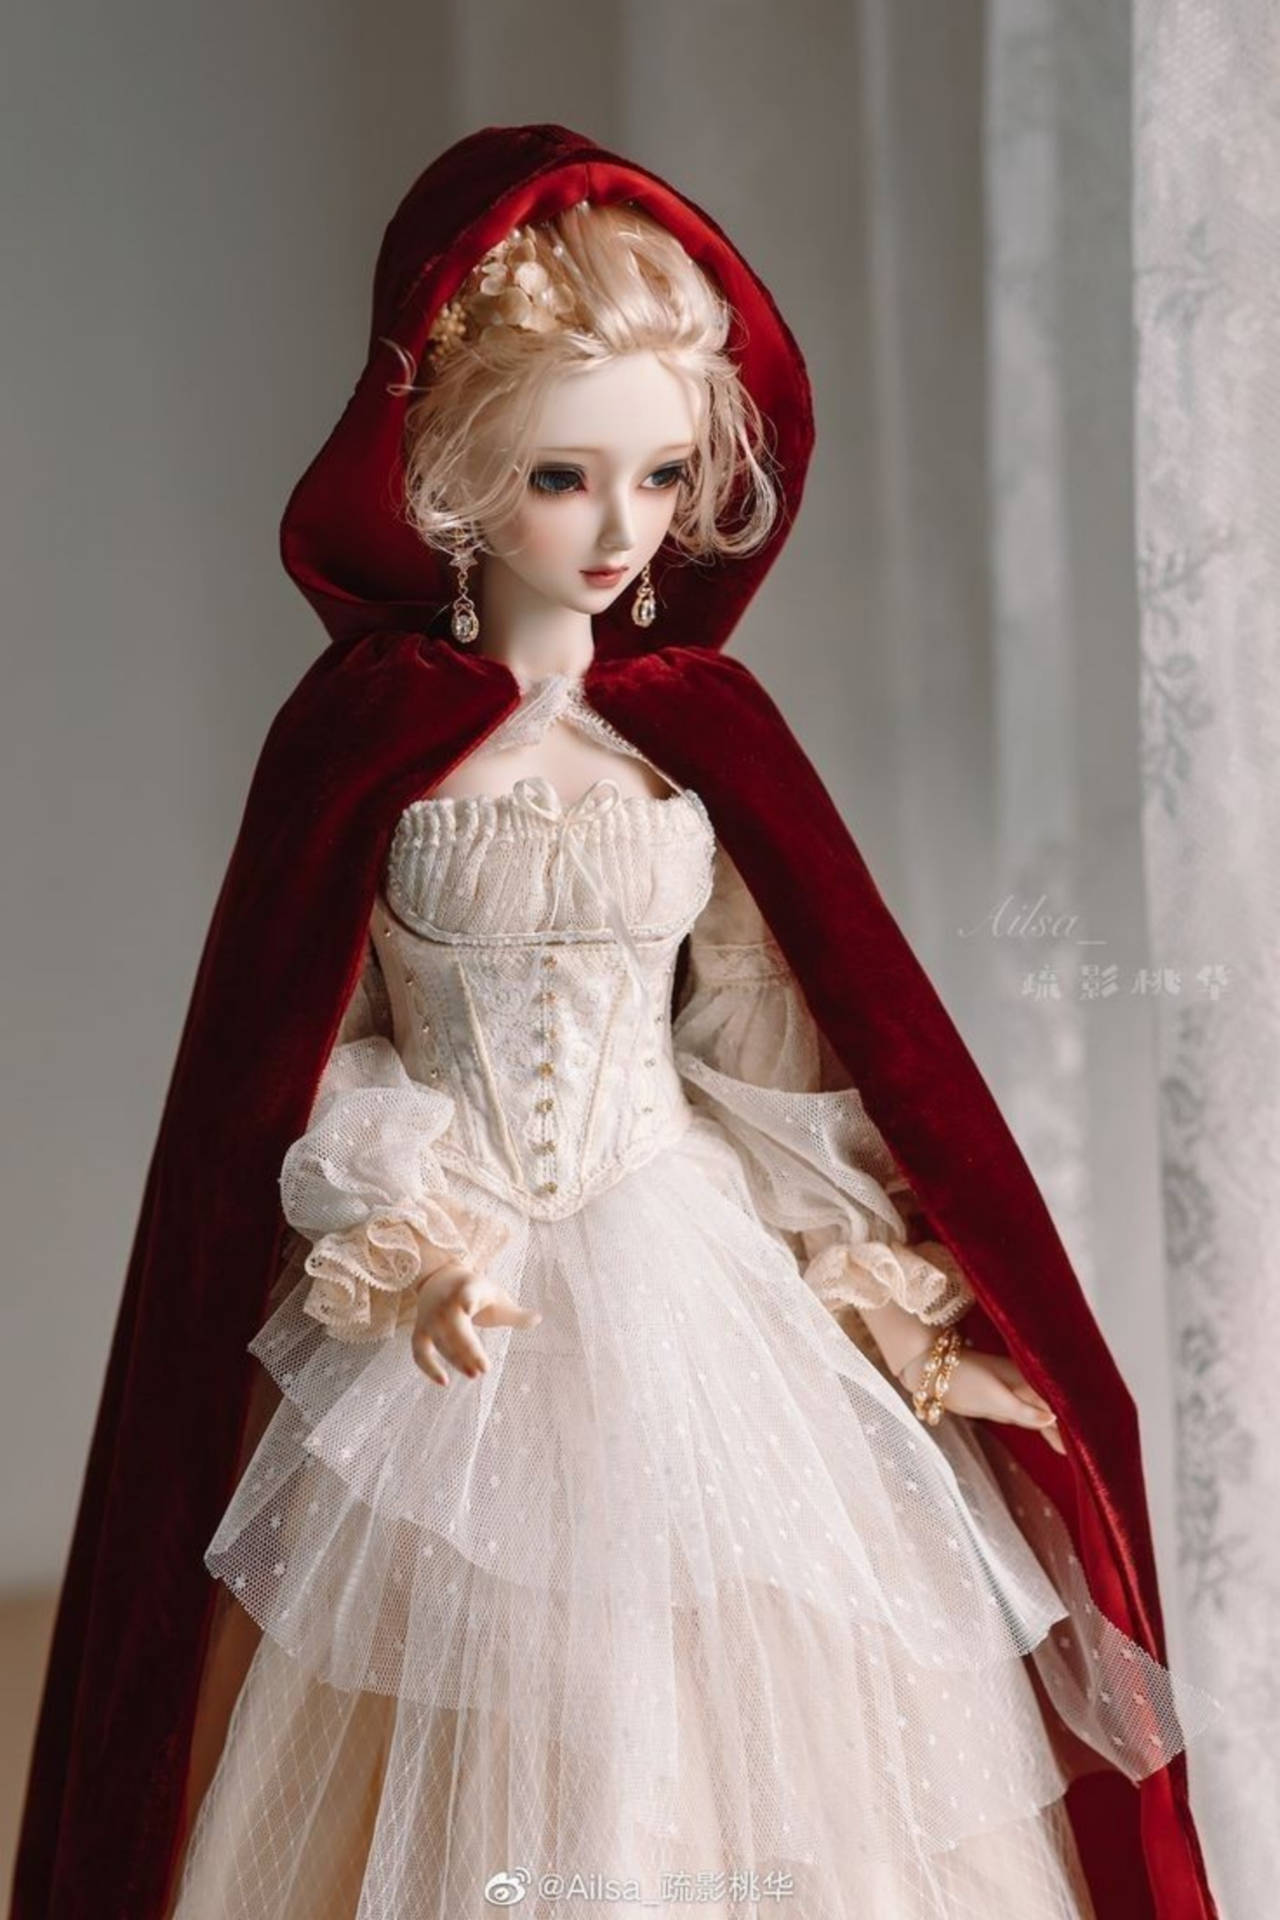 Barbie Doll In Velvet Cloak